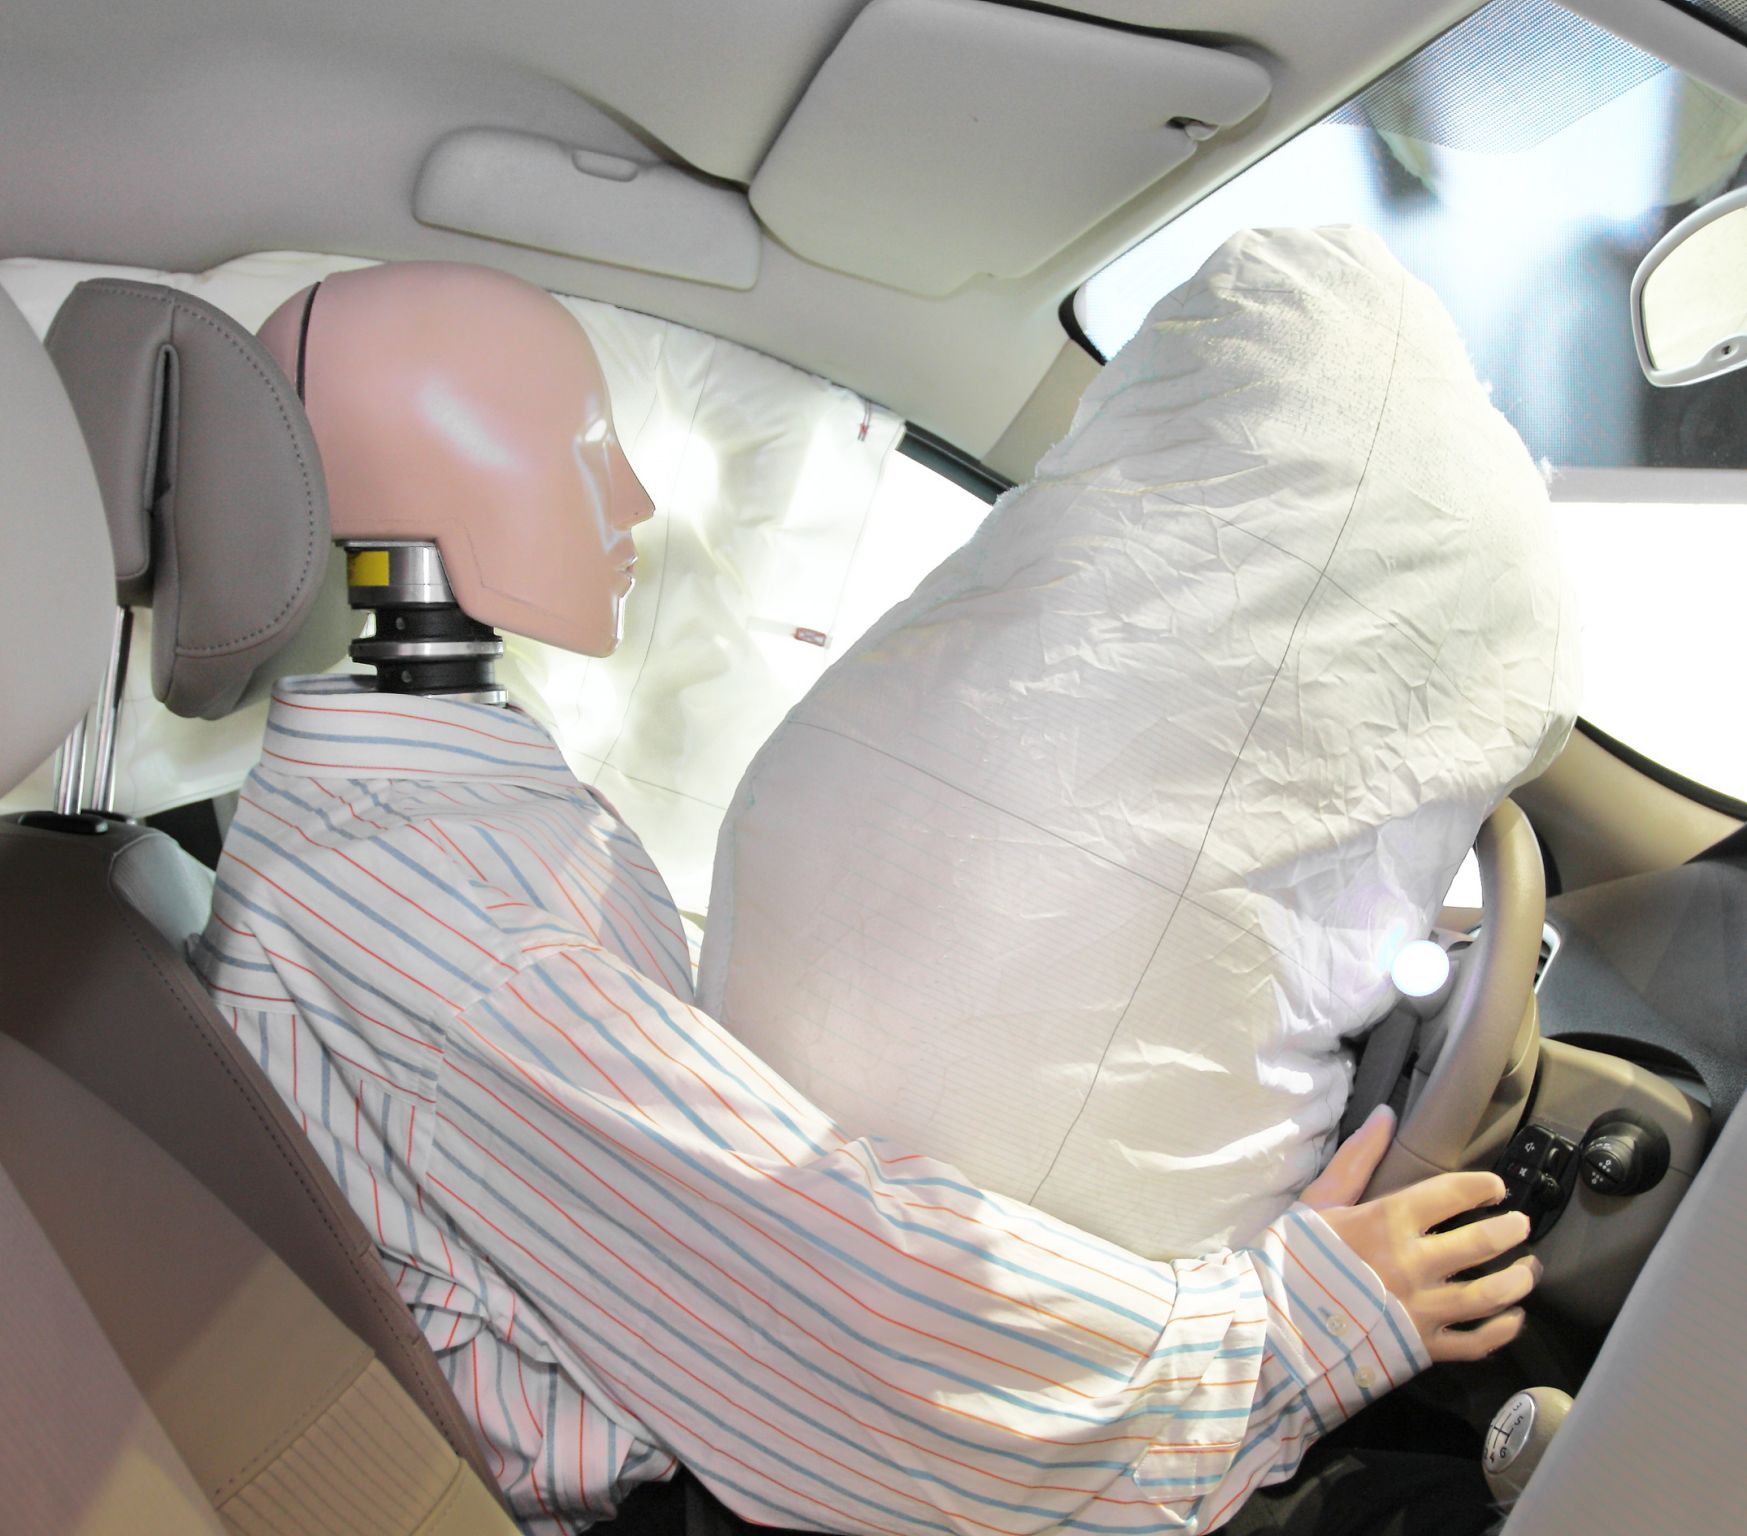 déclenchement d’un airbag (simulation)